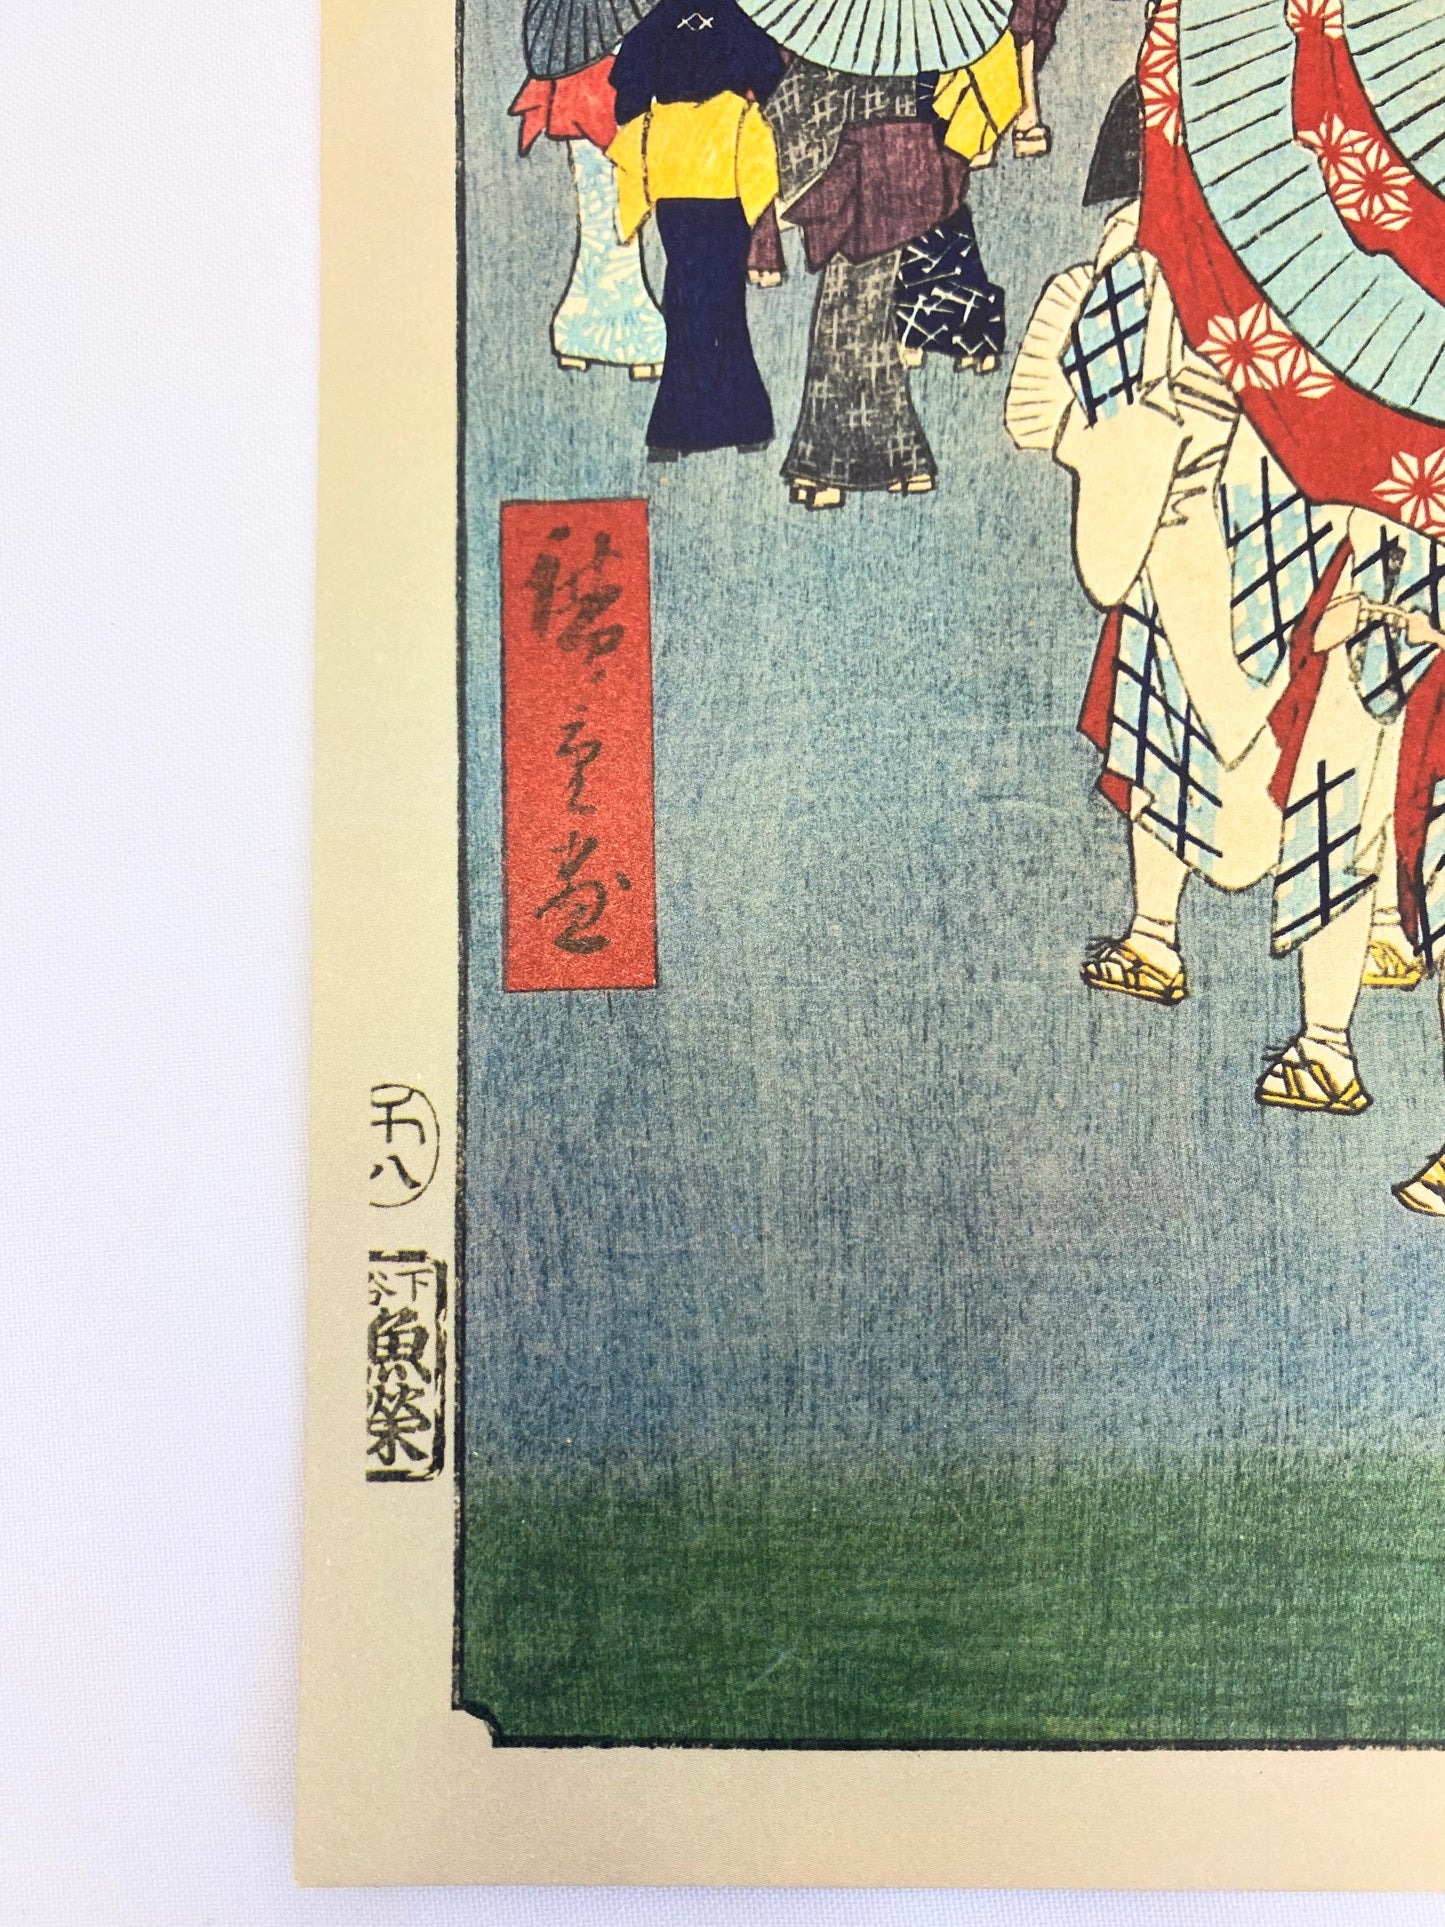 UKIYOE/MEISHOEDOHYAKUKEI /Nihonbashi-dori Ichi-choumeiryakuzu - Picture Print